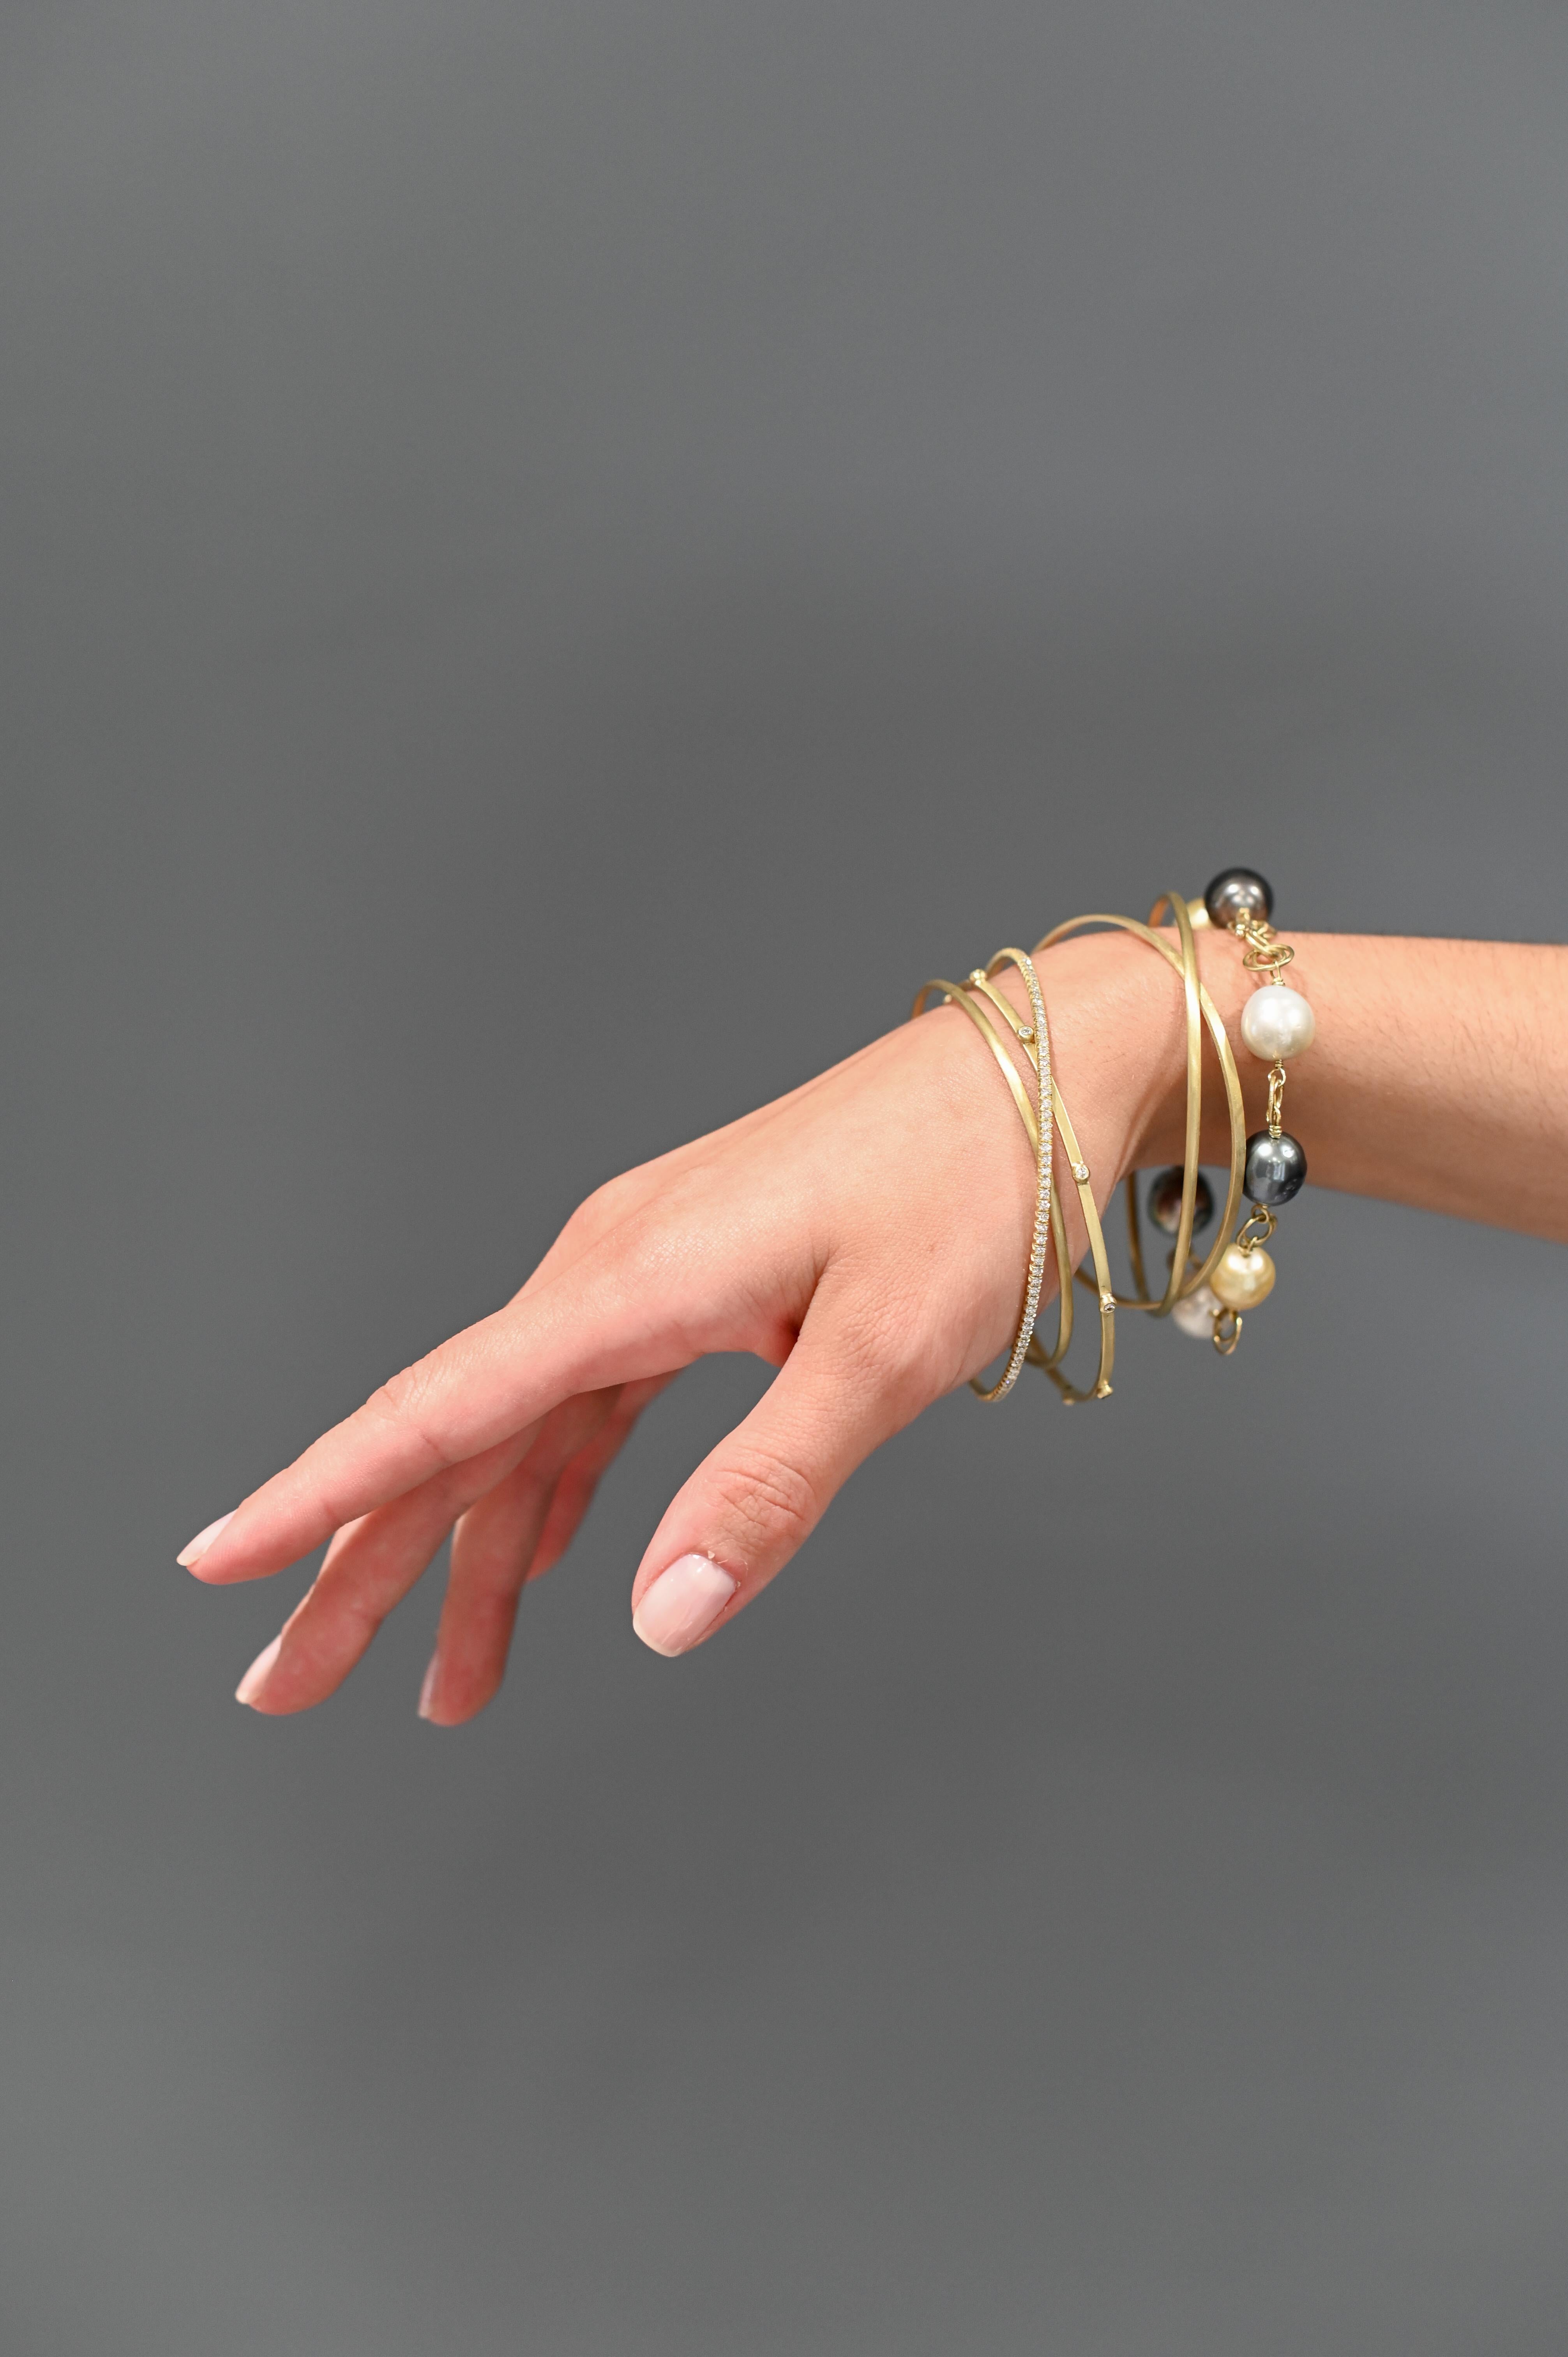 Die 18 Karat Gold Thin Bangles von Faye Kim - einzeln erhältlich - sind aus massivem Gold gefertigt. Die Armbänder können einzeln oder übereinander getragen werden, um einen einzigartigen Stil zu kreieren. 

Breite 2mm
Größen:   
     Klein 2,5